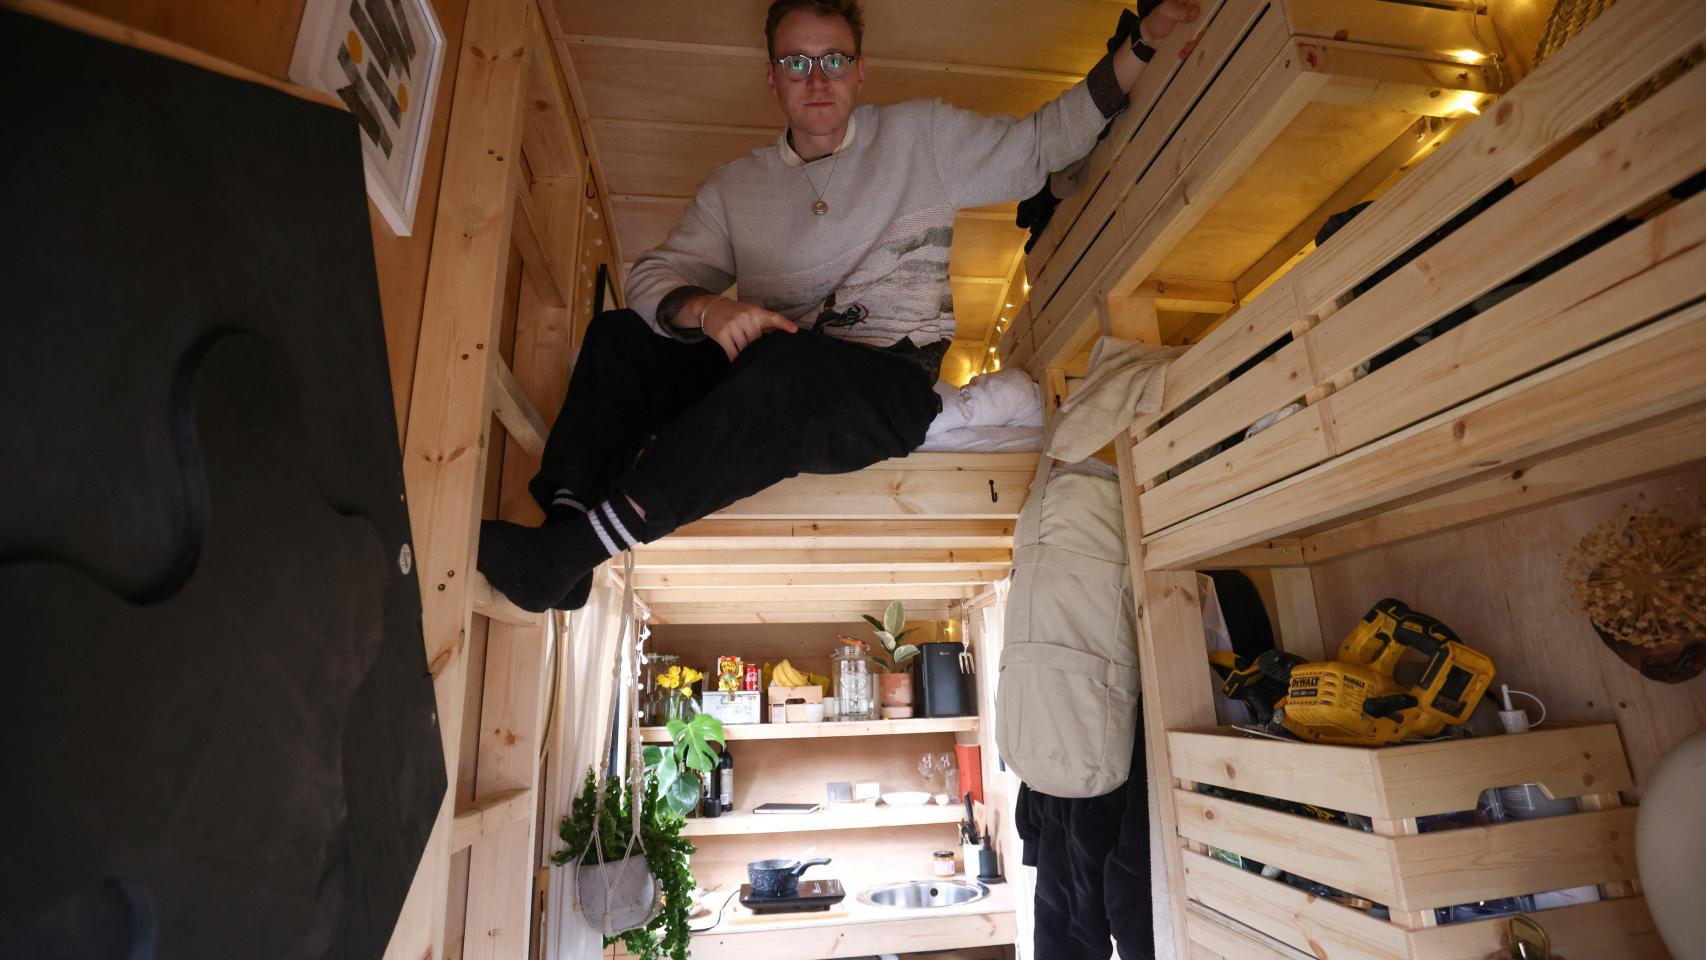 El artista Harrison Marshall posa en el interior del contenedor que ha convertido en vivienda, en la que pretende vivir durante un año.